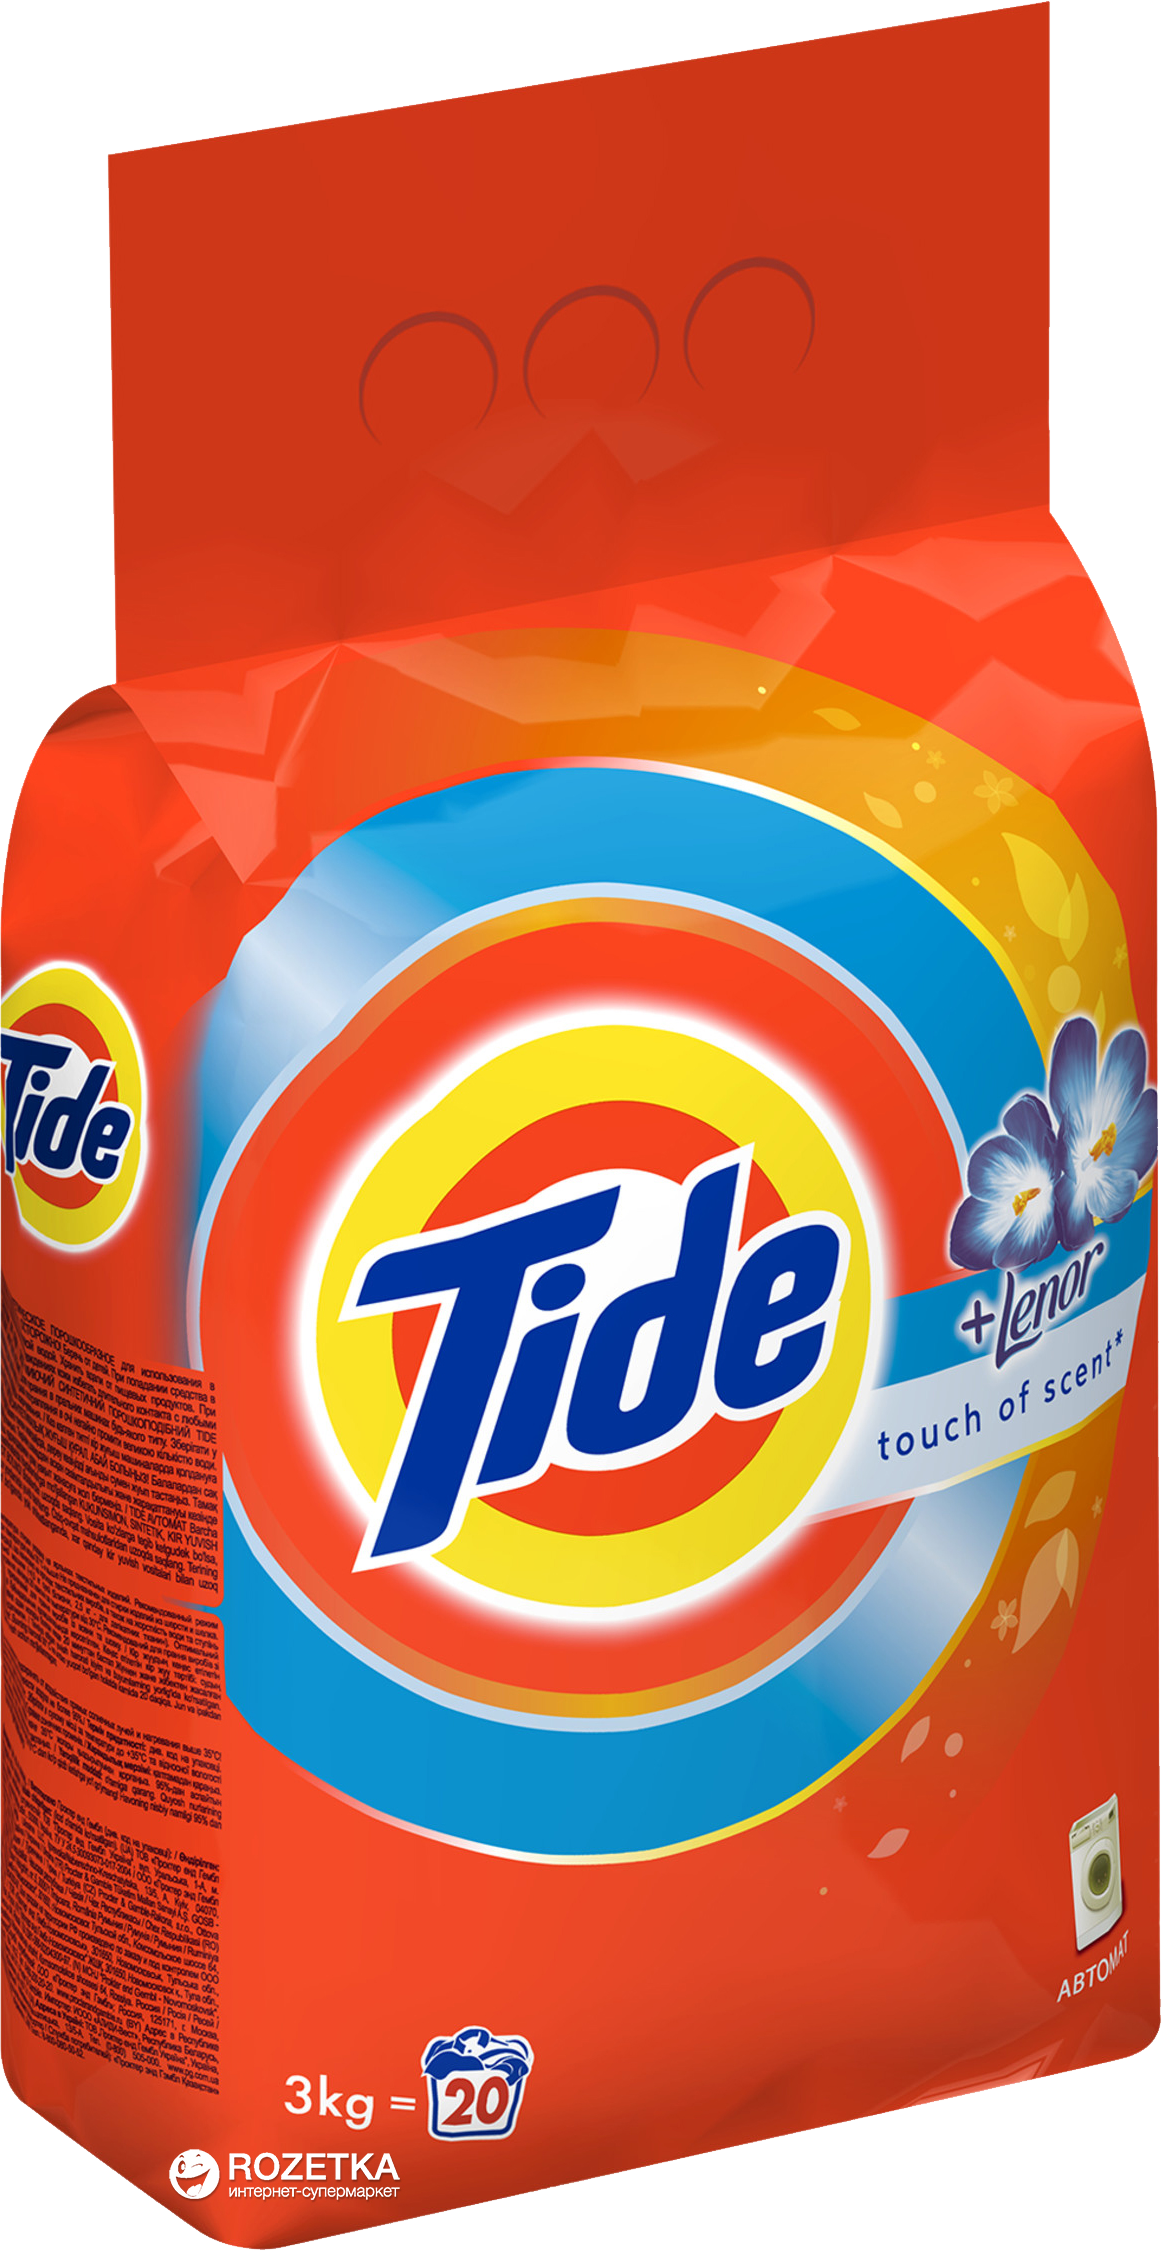 laundry clipart tide detergent